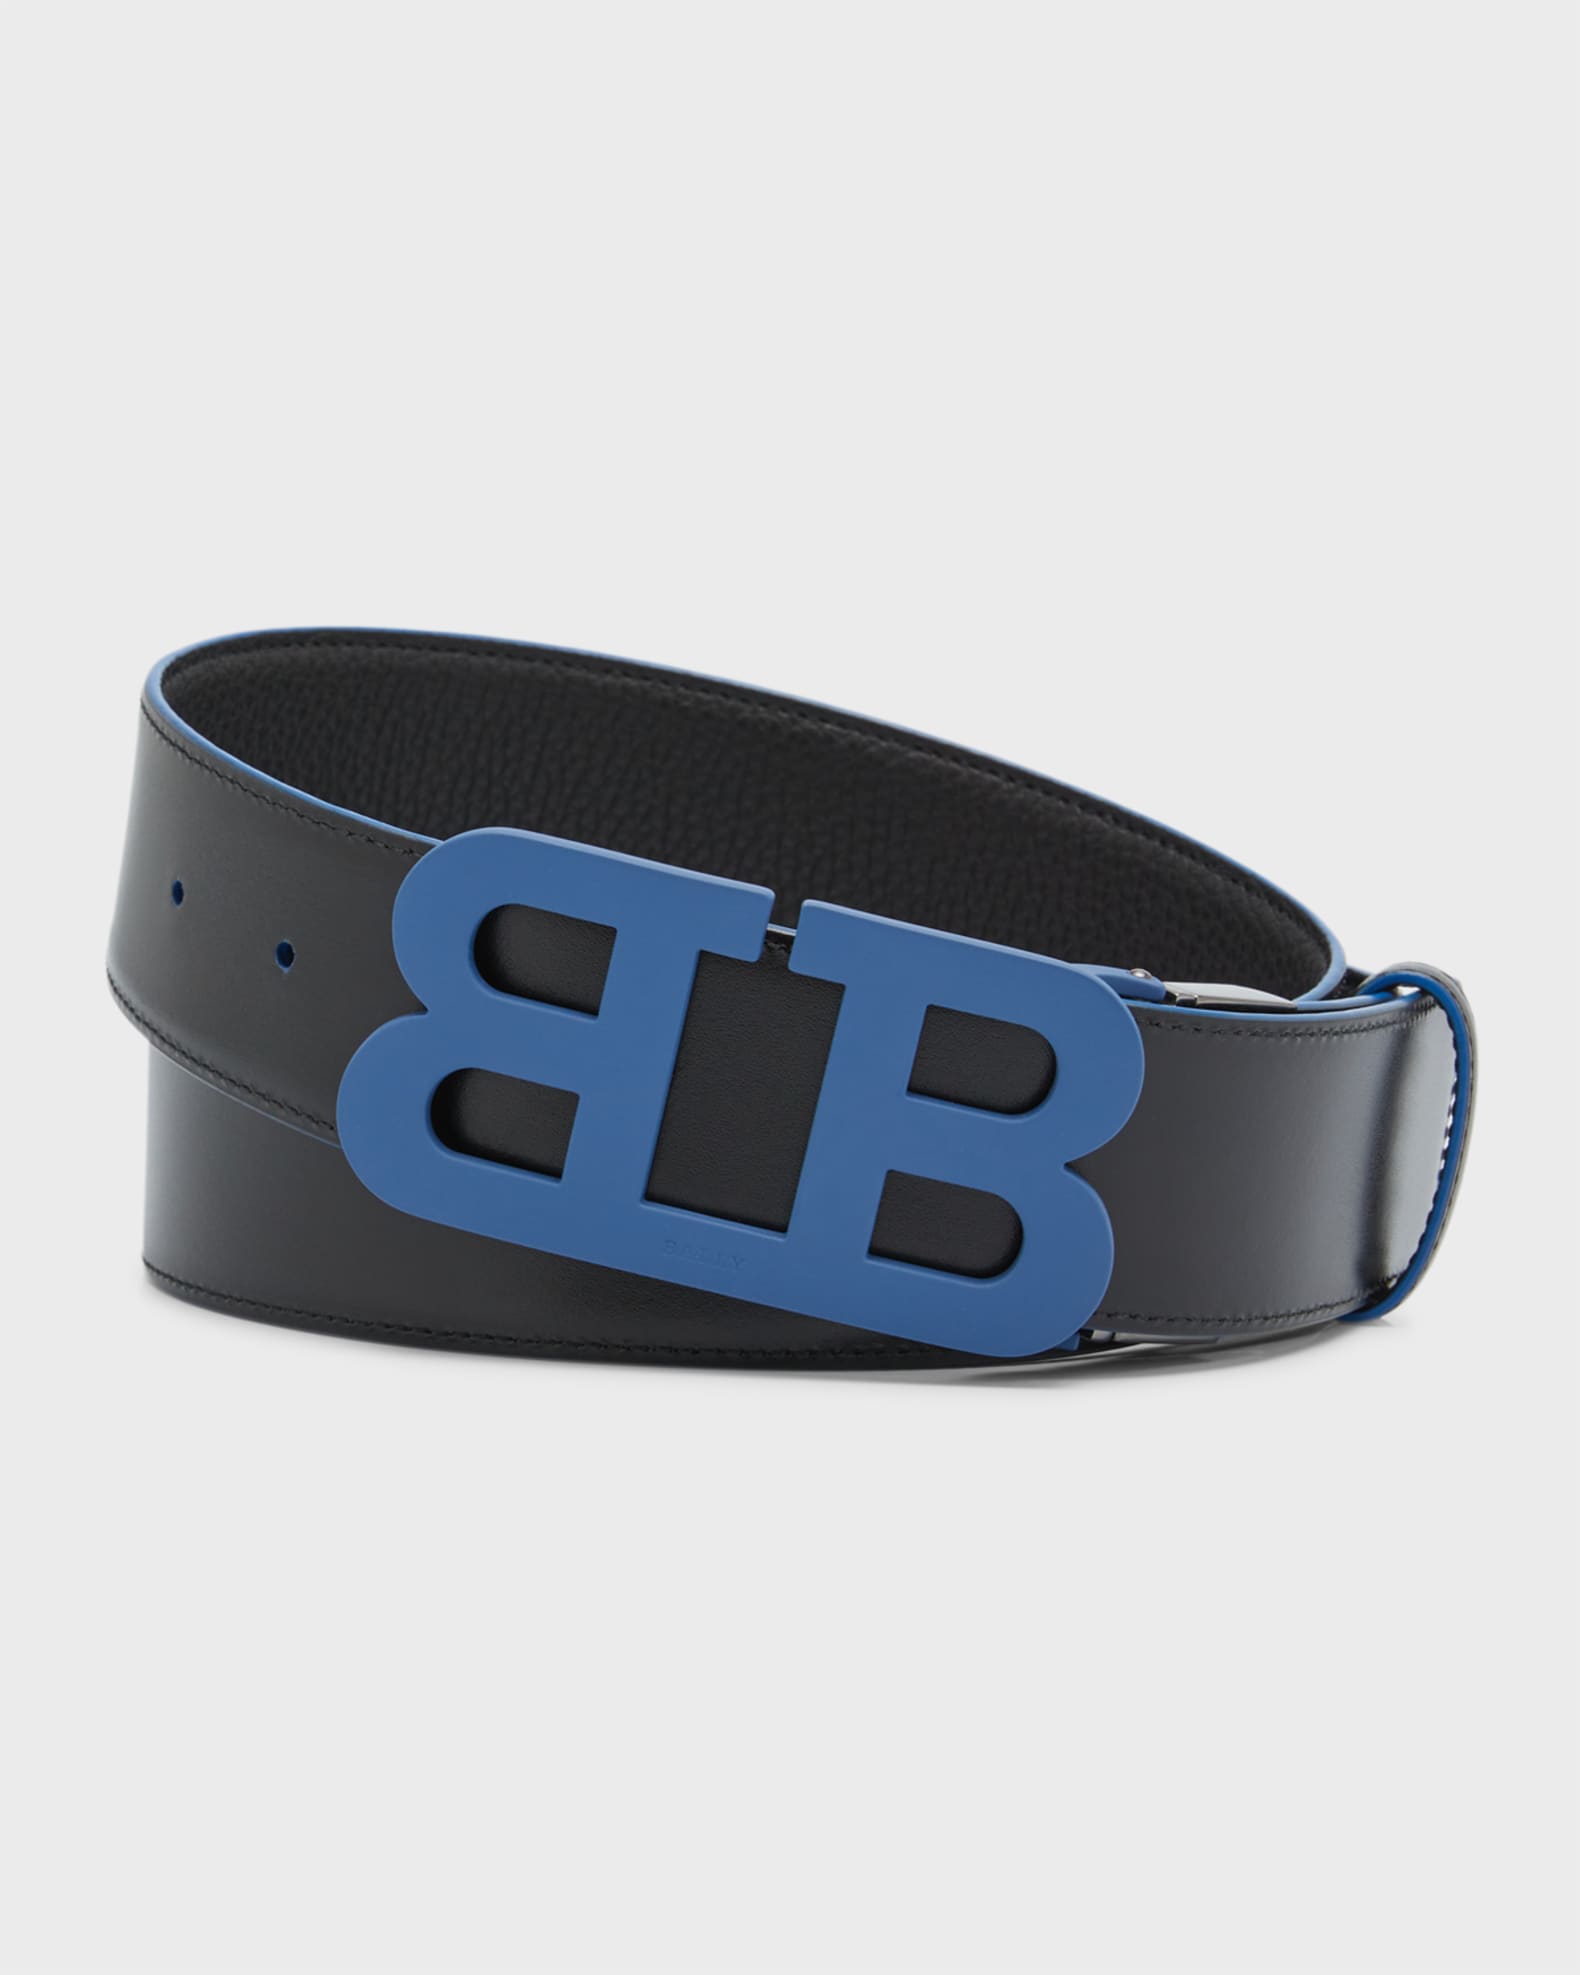 vedlægge Brug af en computer race Bally Men's BB Buckle Leather Belt | Neiman Marcus